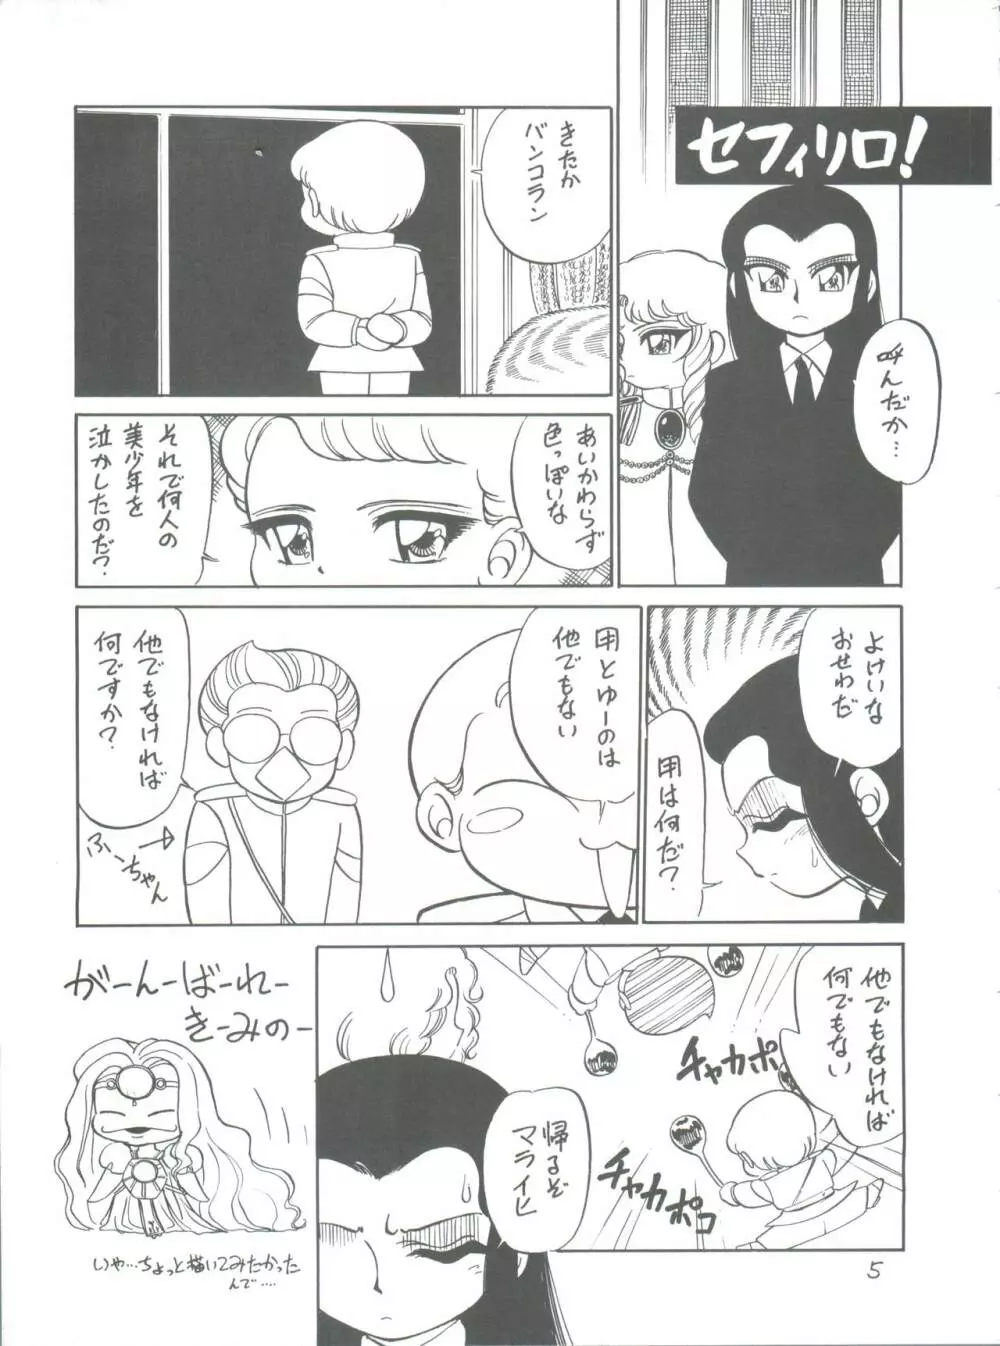 新せん組三下! - page5